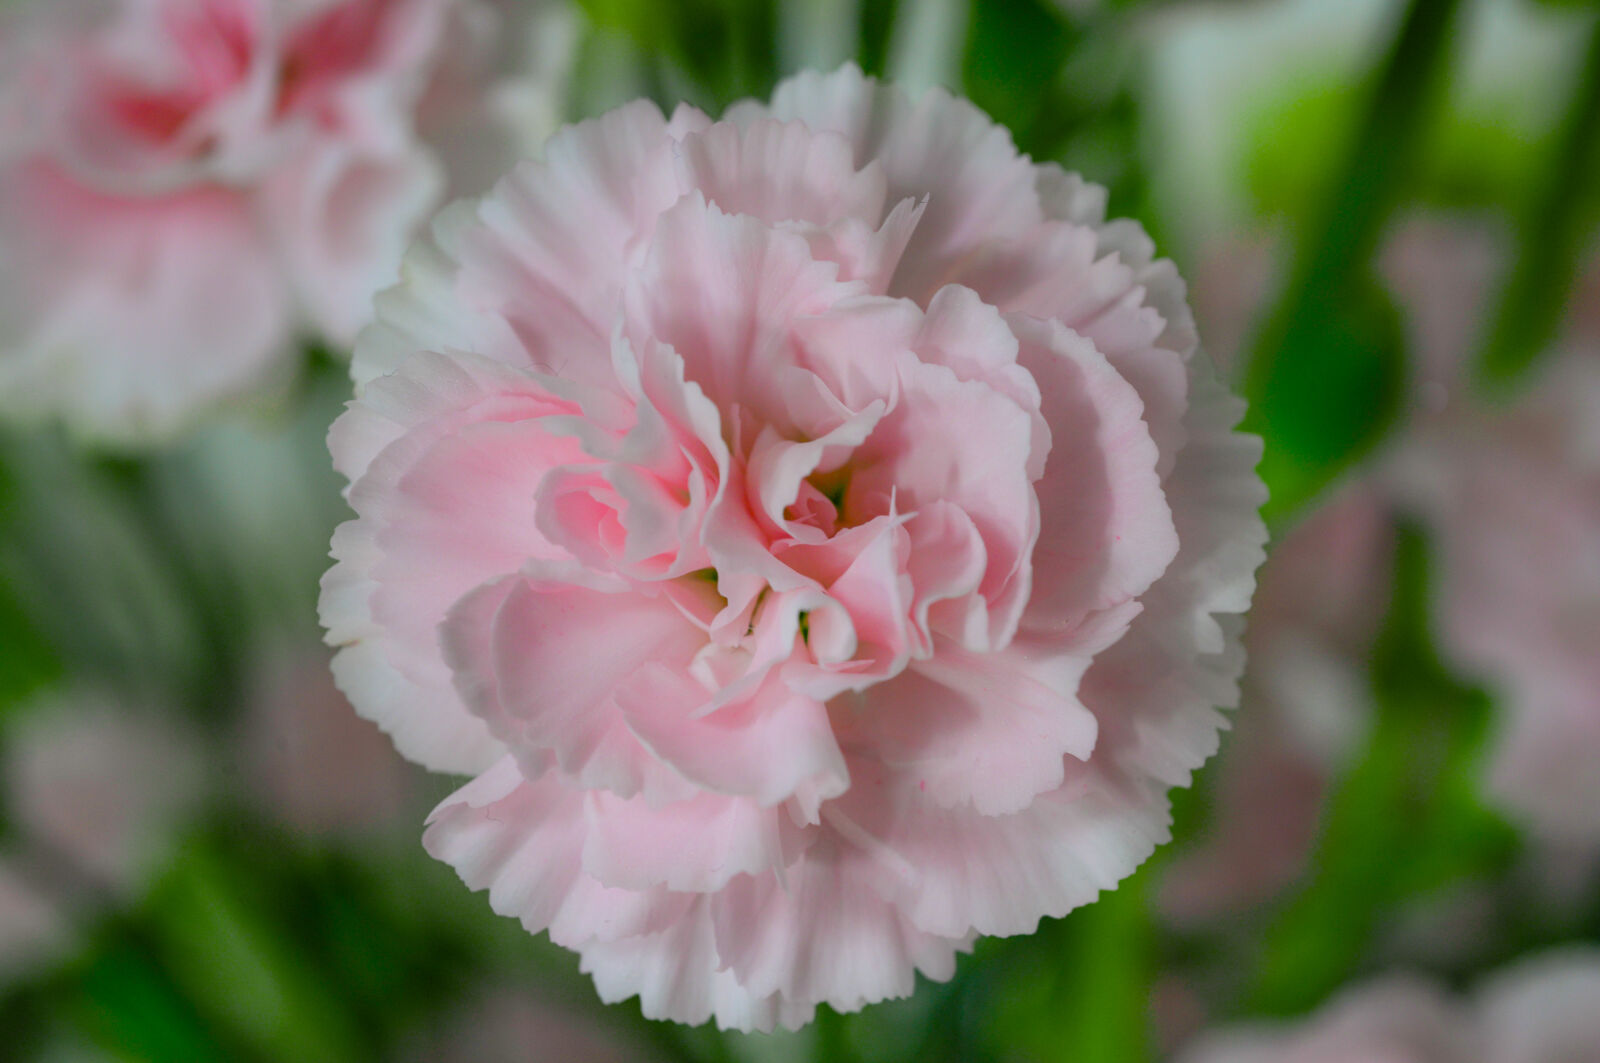 Nikon D610 + AF Micro-Nikkor 55mm f/2.8 sample photo. Pink, petaled, flower photography